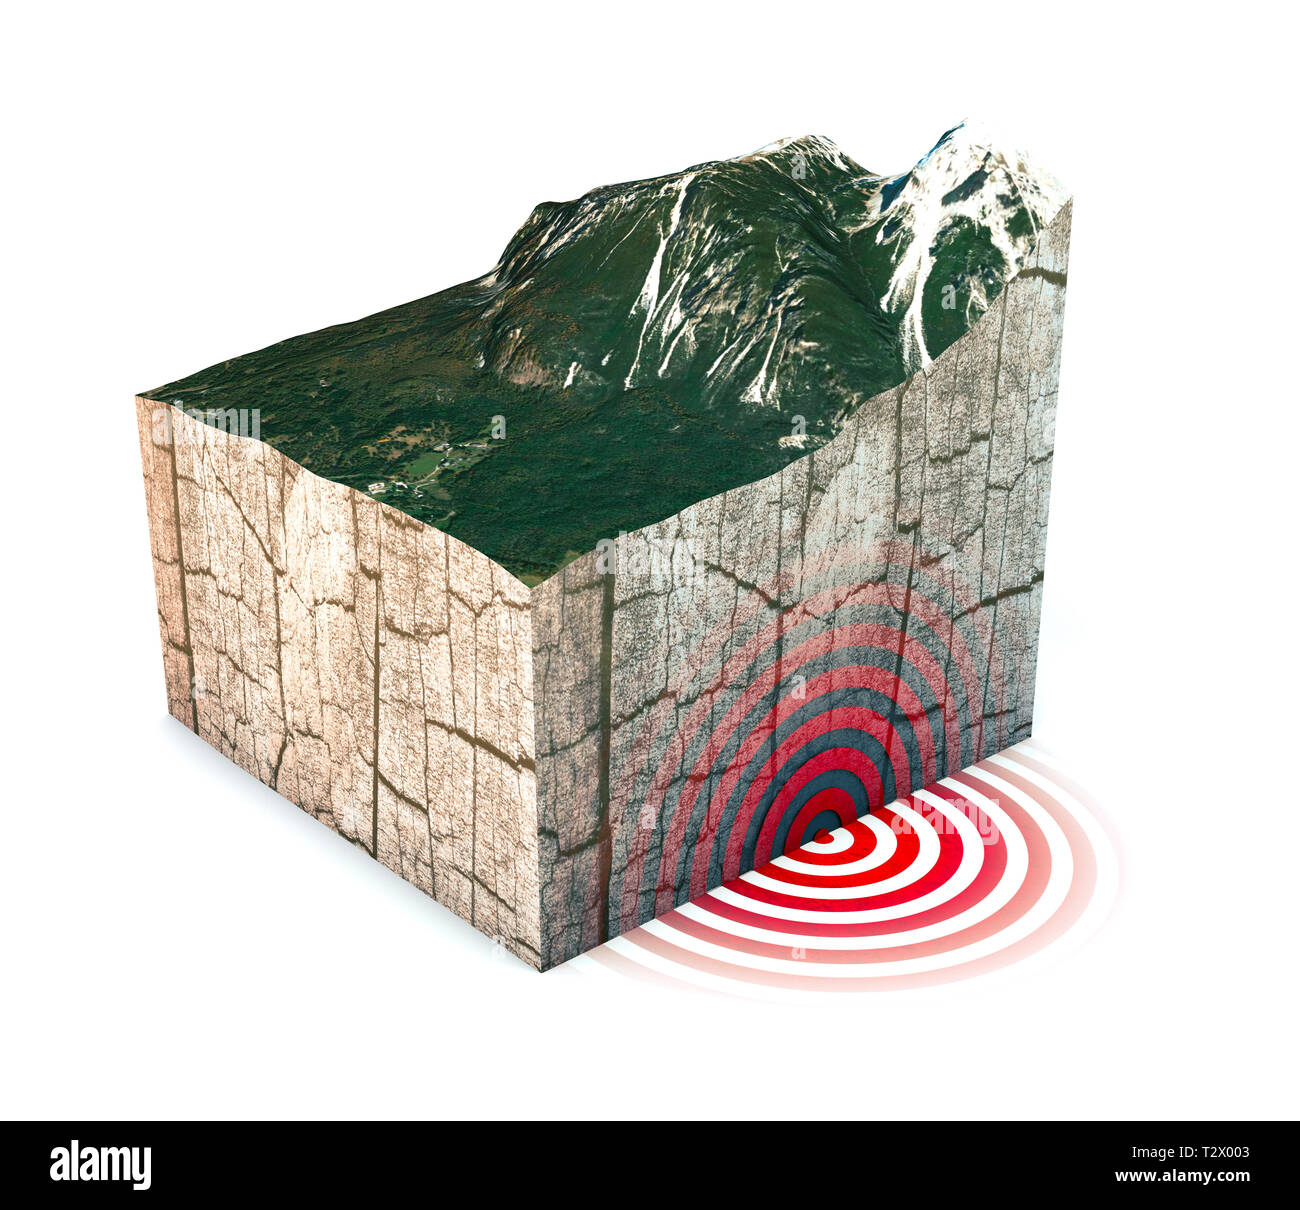 Erdbeben im Abschnitt, Schütteln, Elemente dieses Bild sind von der NASA eingerichtet. Abschnitt von Land durch ein starkes Erdbeben der Magnitude angeschlagen. 3D-Rendering Stockfoto